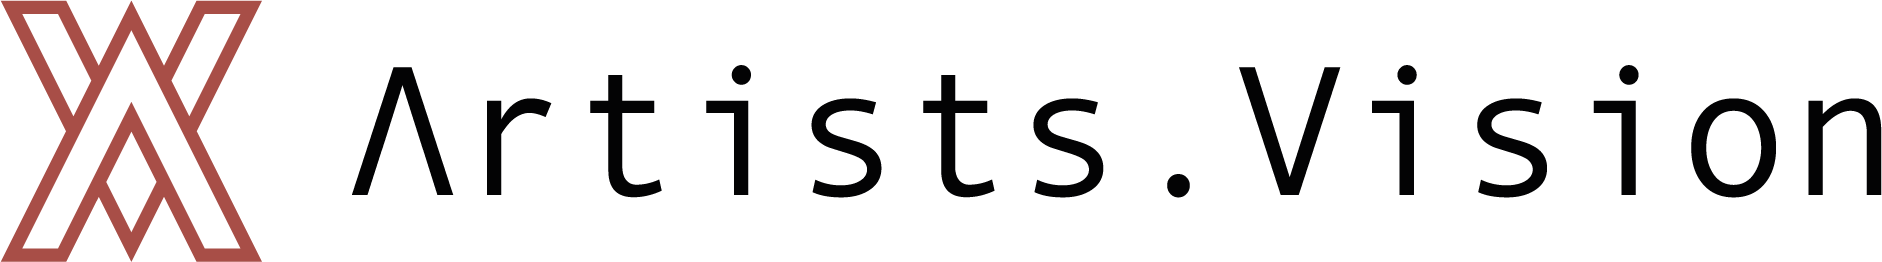 ArtistsVision - Logo